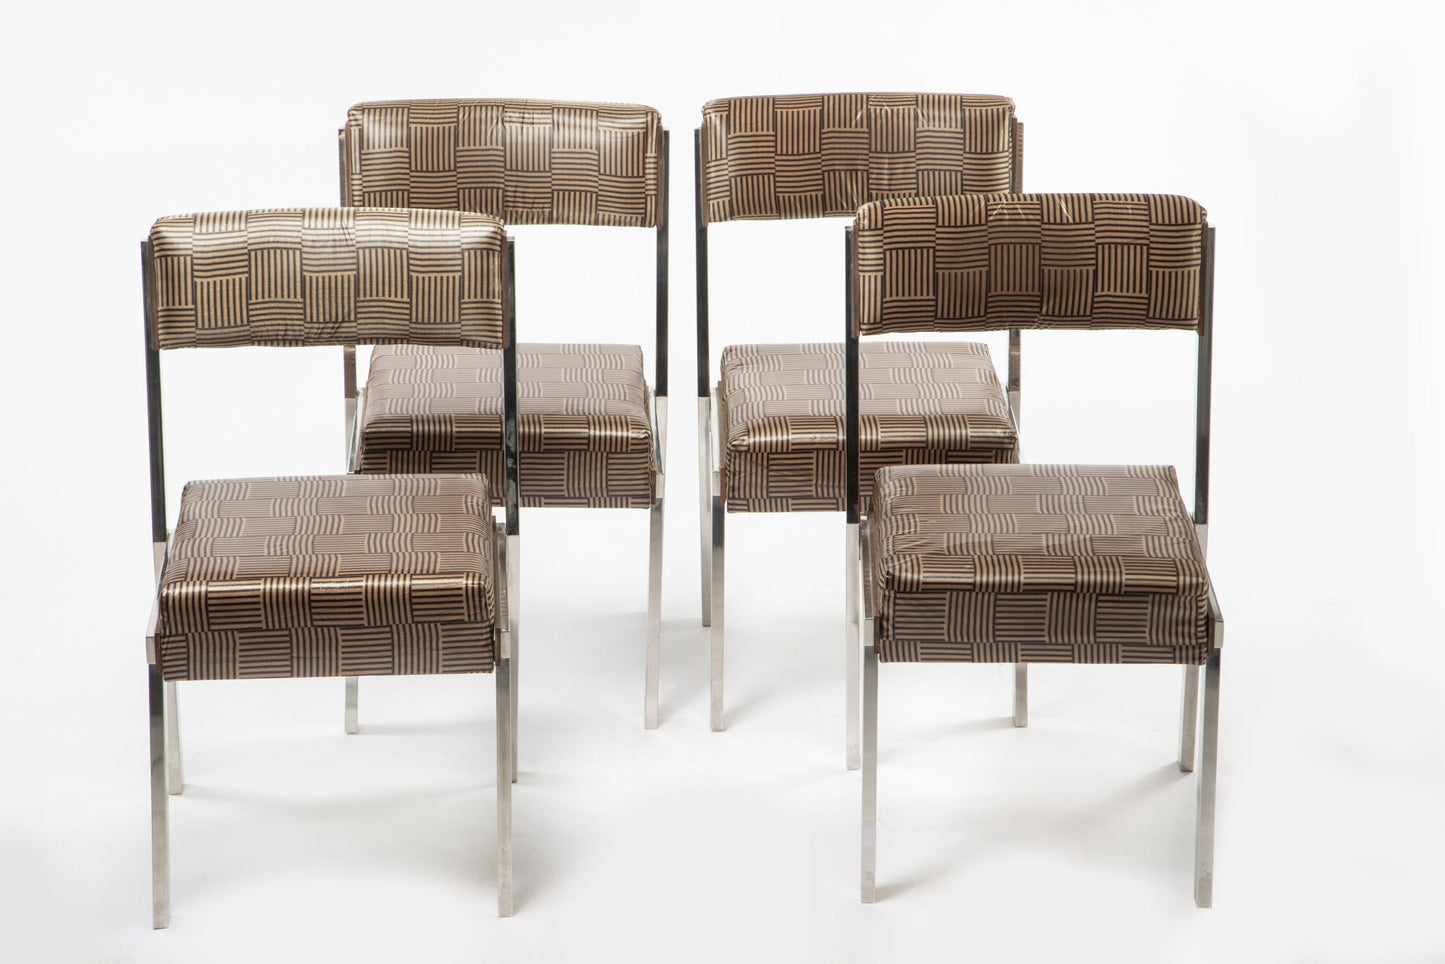 Quattro sedie acciaio anni 70 reinterpretate triplef